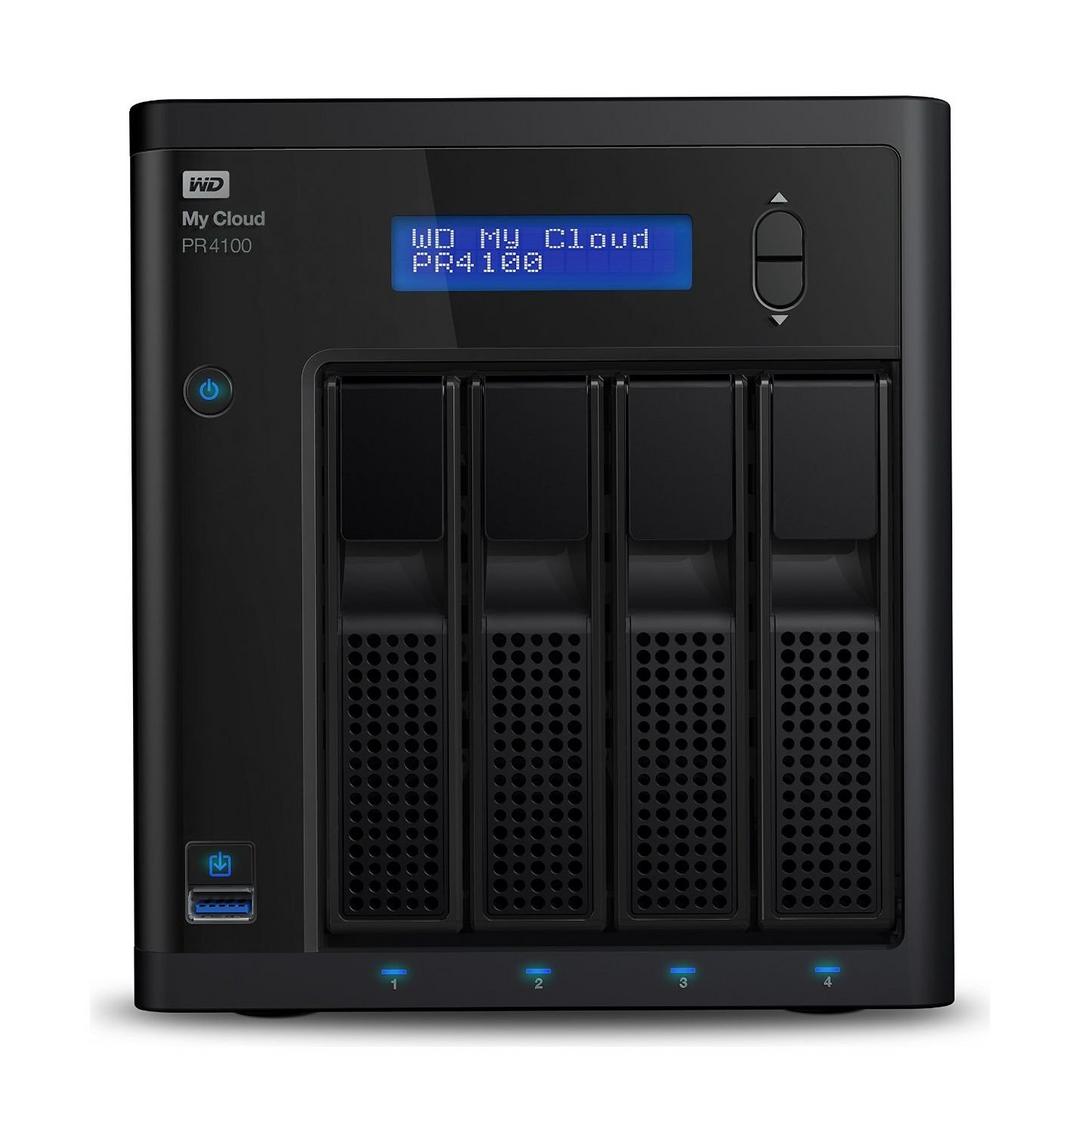 Western Digital My Cloud PR4100 24TB 4-Bay NAS And Cloud Storage (WDBNFA0240NBK)